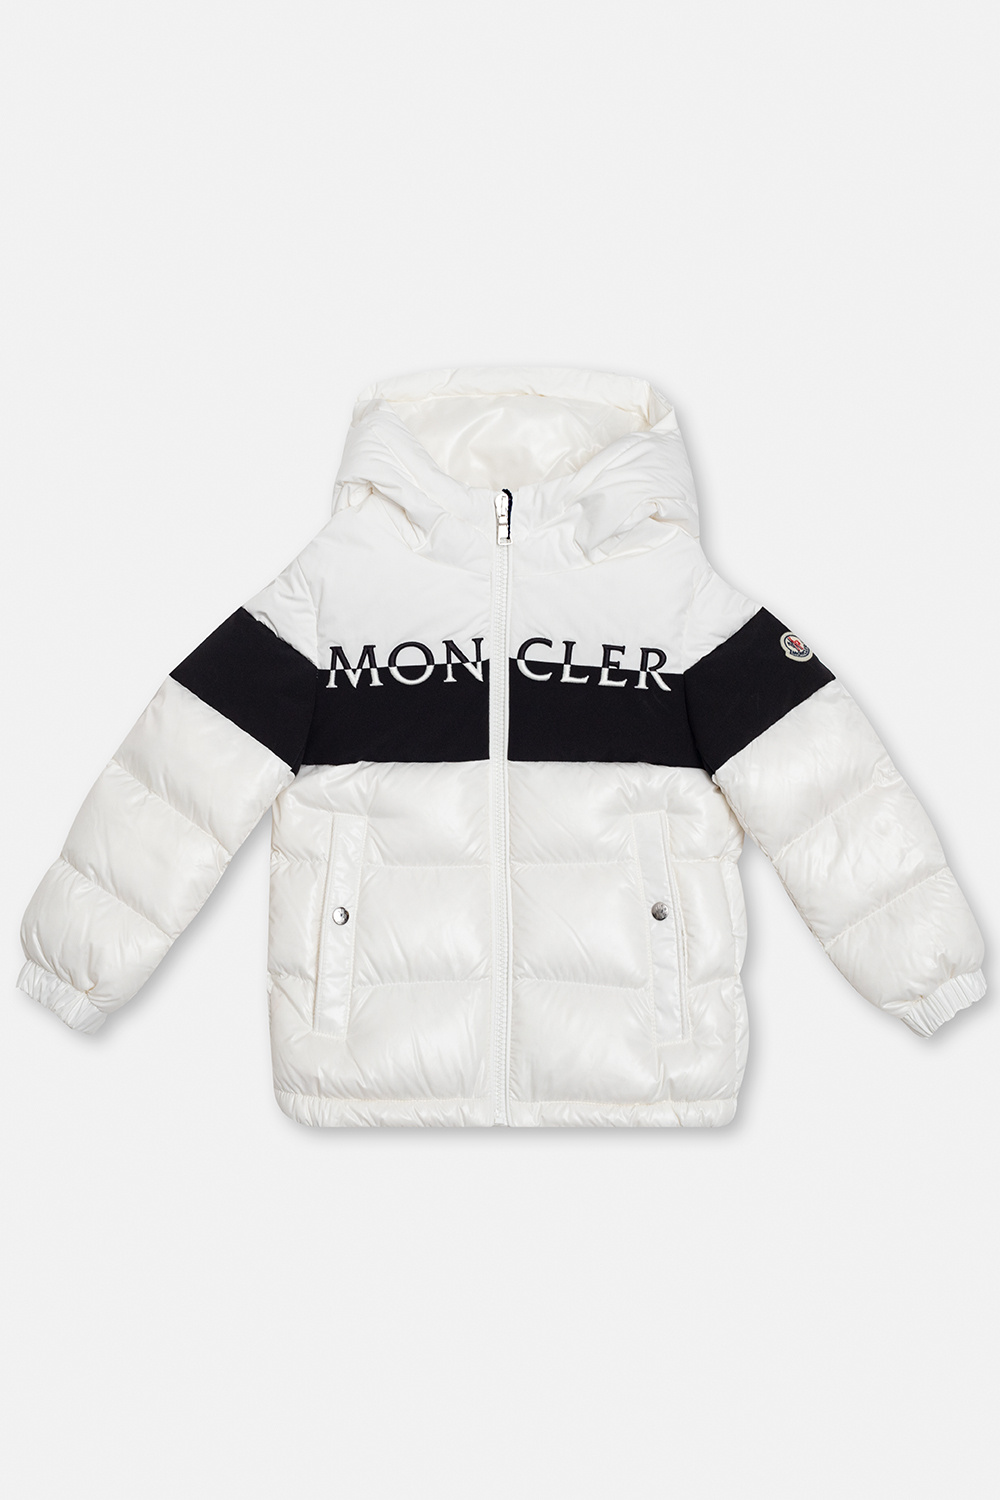 Moncler Enfant ‘Laotari’ down Jackets jacket